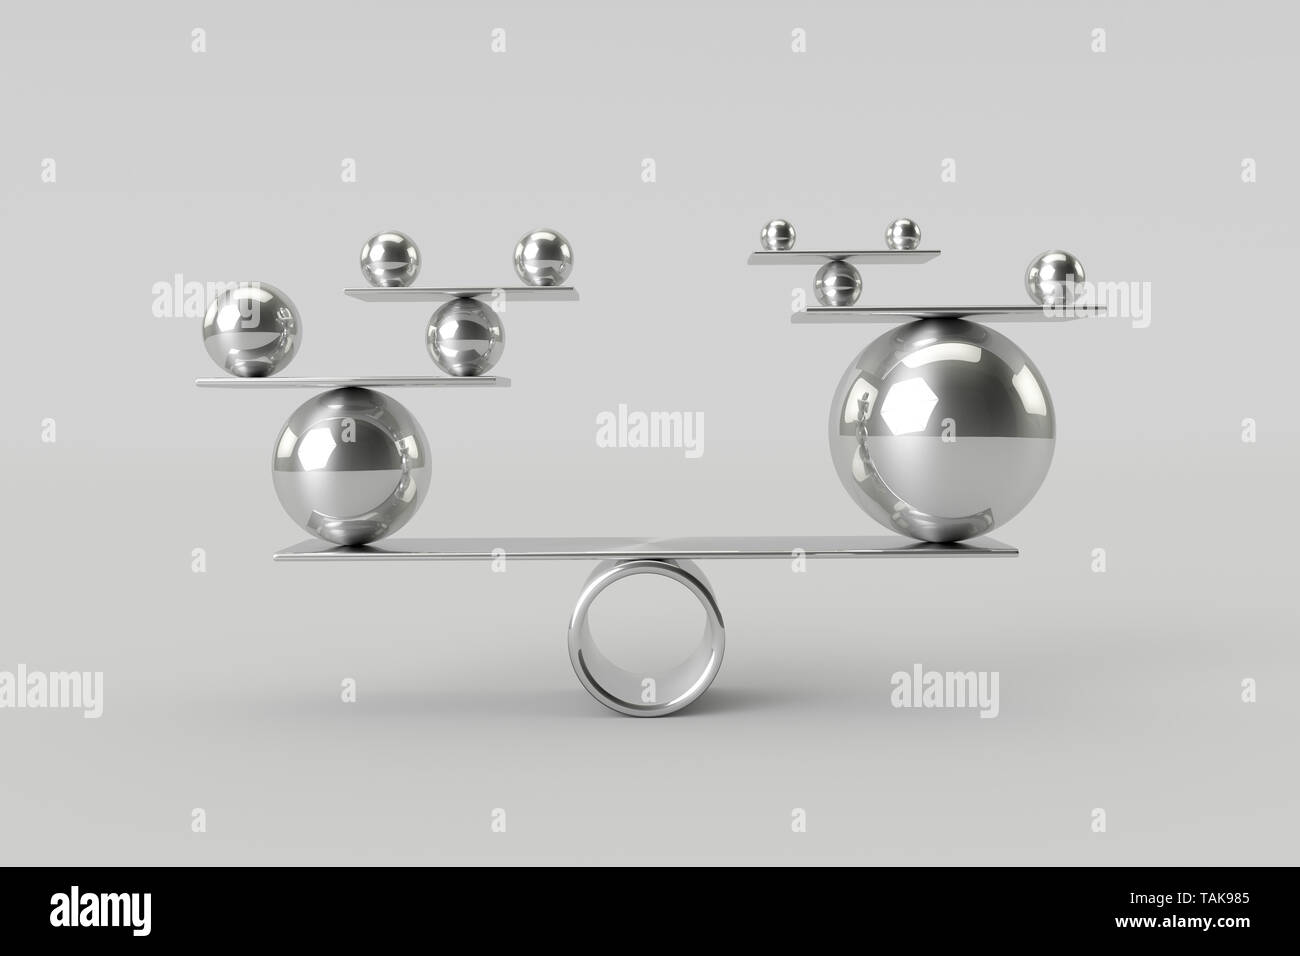 Harmonie parfaite de chrome brillant balls.Le travail d'équipe et l'équilibre des risques,concept.rendu 3D. Banque D'Images